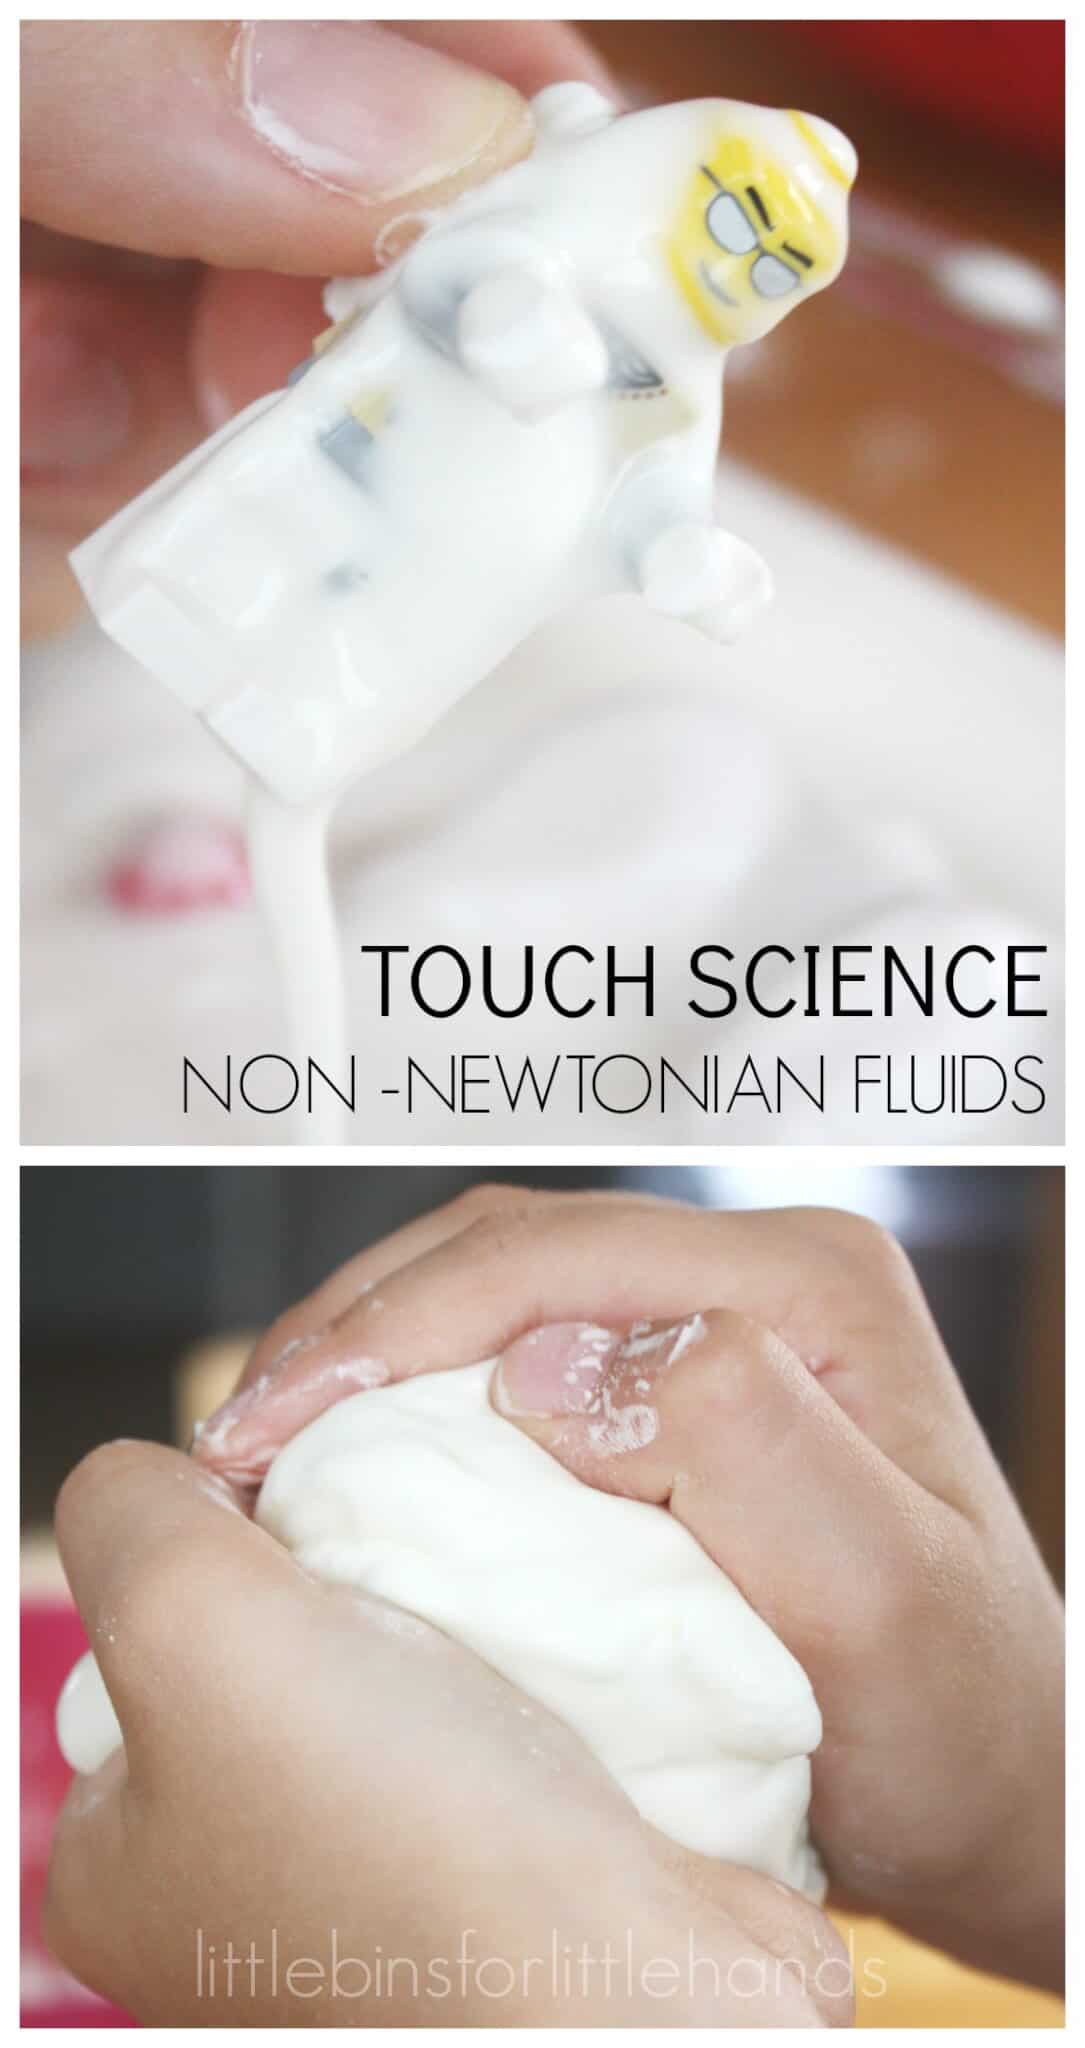 Amidon de porumb și apă - Fluid non newtonian - Coșuri mici pentru mâini mici